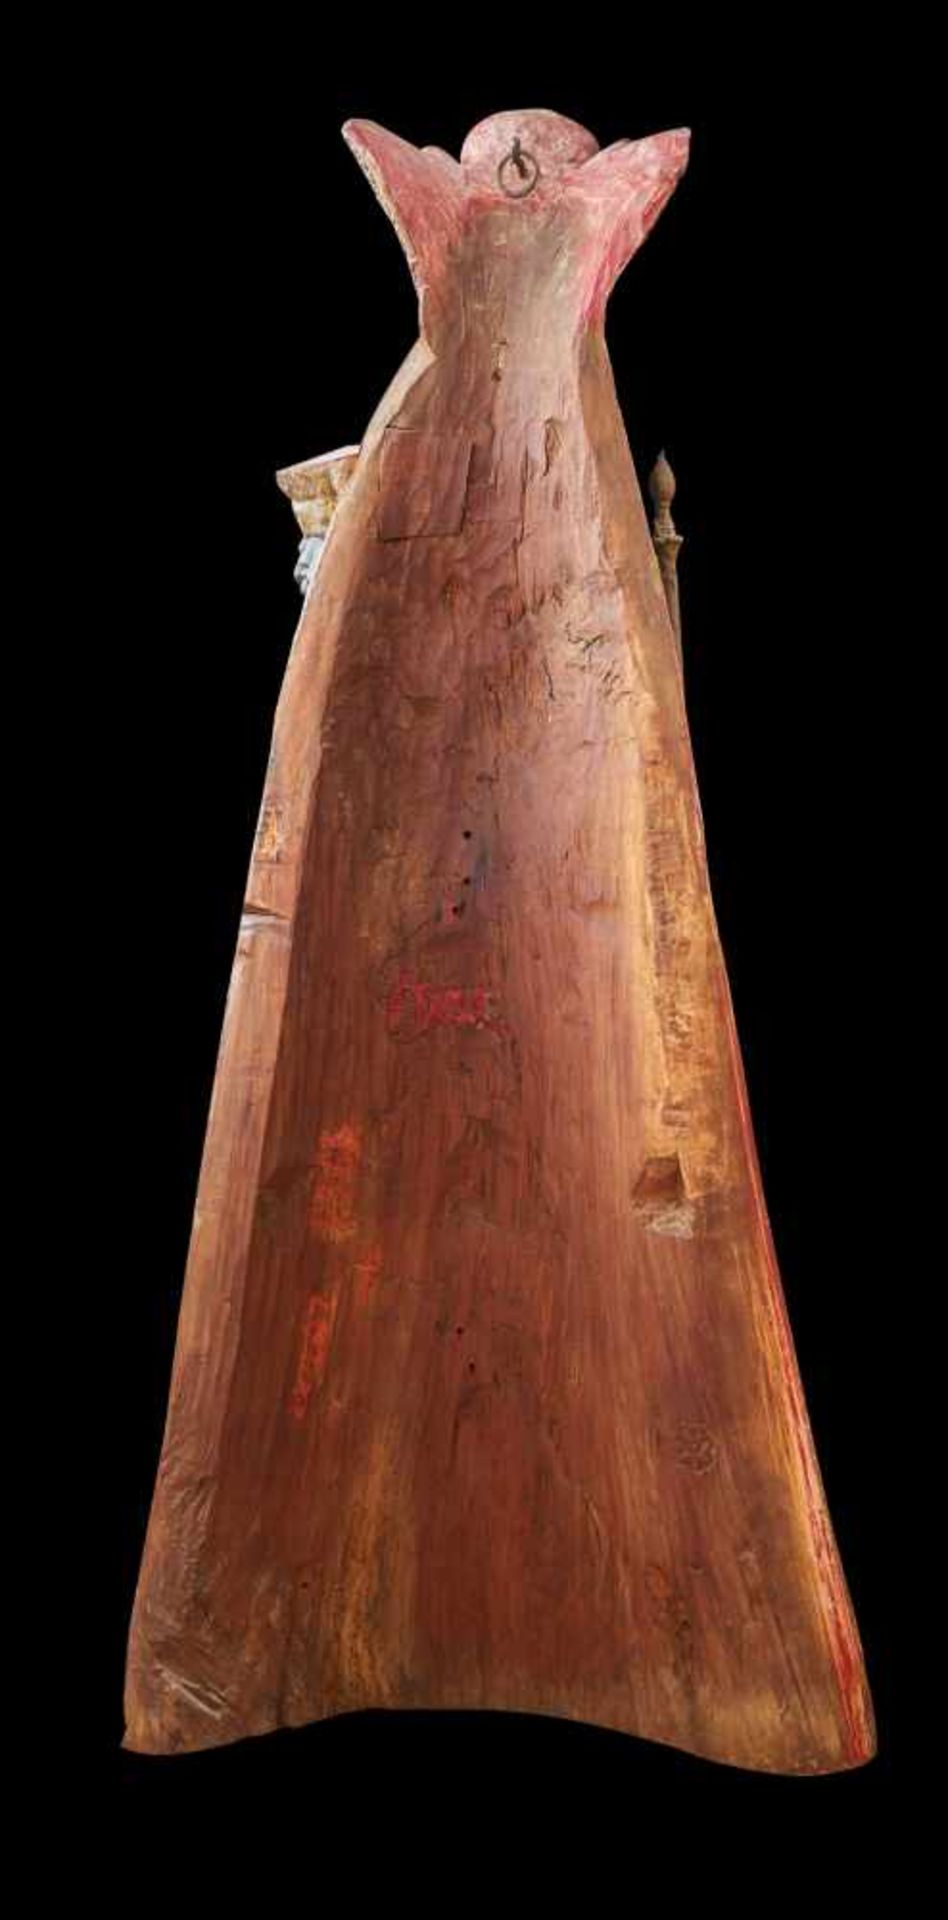 Schwarze Madonna 'Kloster Einsiedeln'Holz, polychrom gefasst, vergoldet, 17./18. Jhdt. Höhe 140 - Bild 2 aus 2